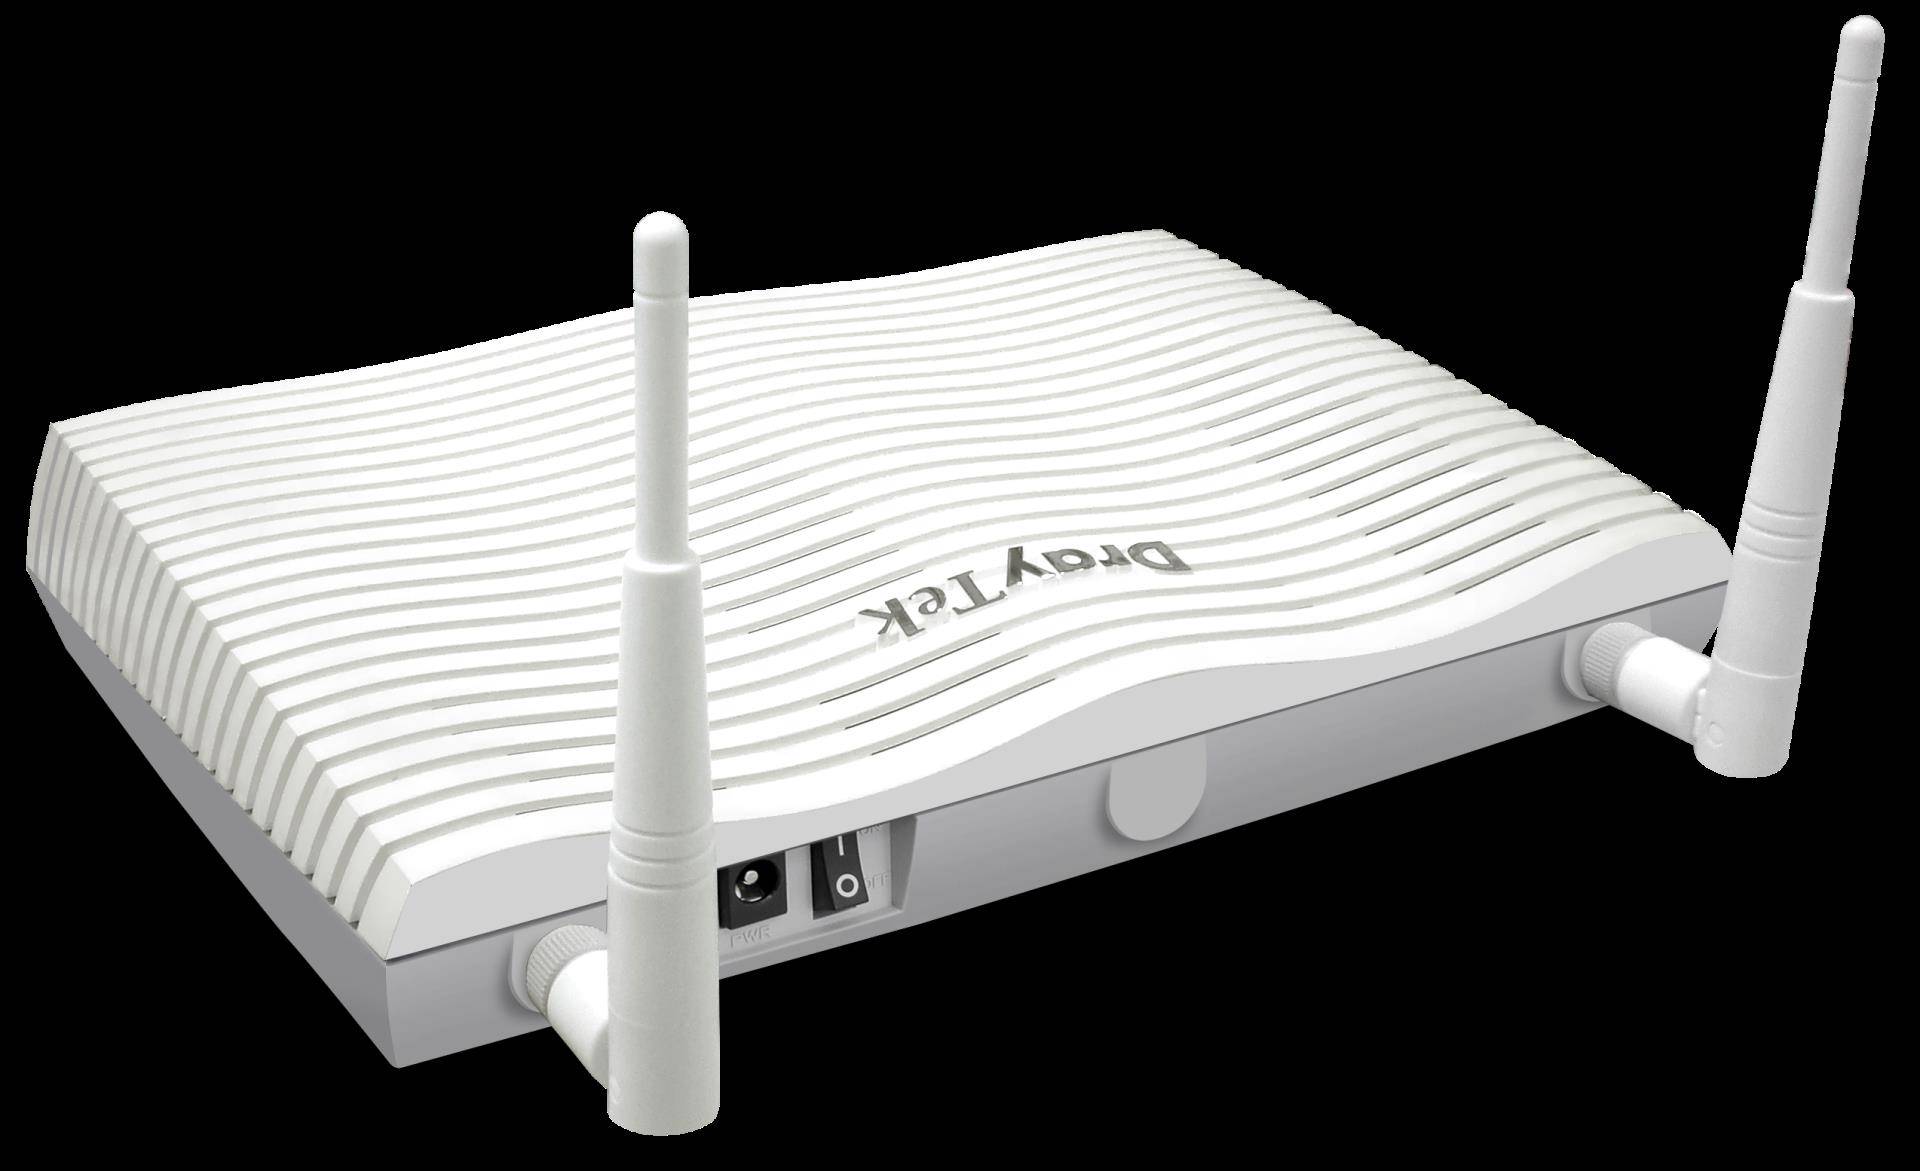 DrayTek Vigor 2866Vac Dual-Wan Router mit integriertem G.Fast/VDSL2/Supervectoring/ADSL Modem als WAN1 und Gigabit Ethernet WAN2, 5 x Gigabit LAN, 32xVPN, Firewall, Contentfilter, zentralem AP- und Switchmanagement, VoIP mit 2x FXS-Ports (V2866VAX-DE-AT-CH) von Draytek